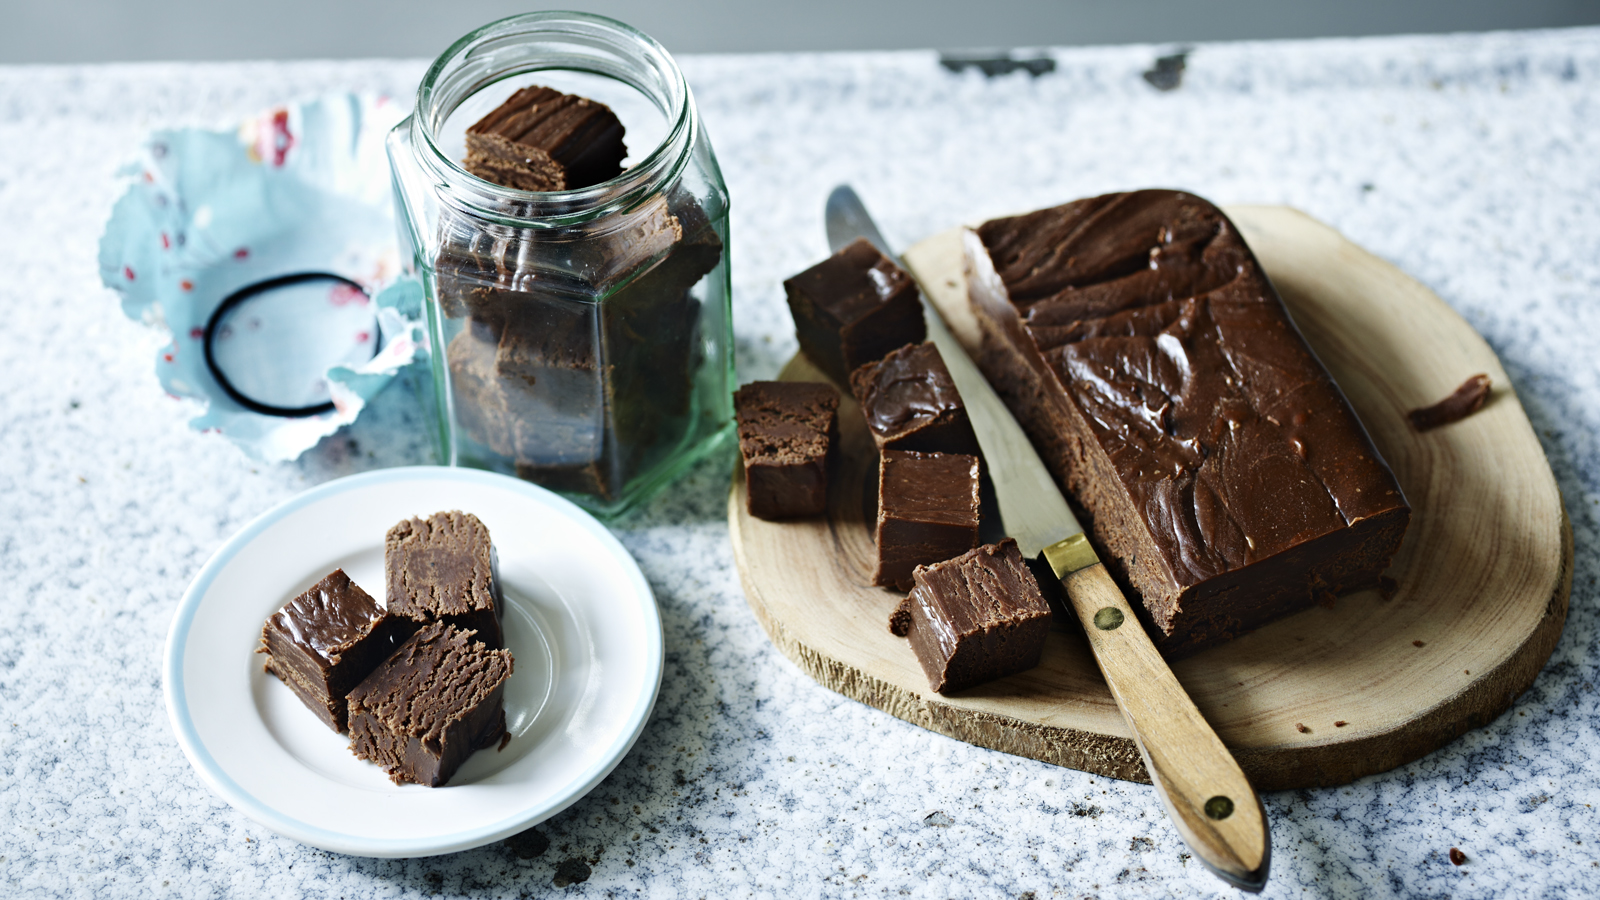 HomeKreation - Kitchen Corner: Chocolate Fudge Cake III